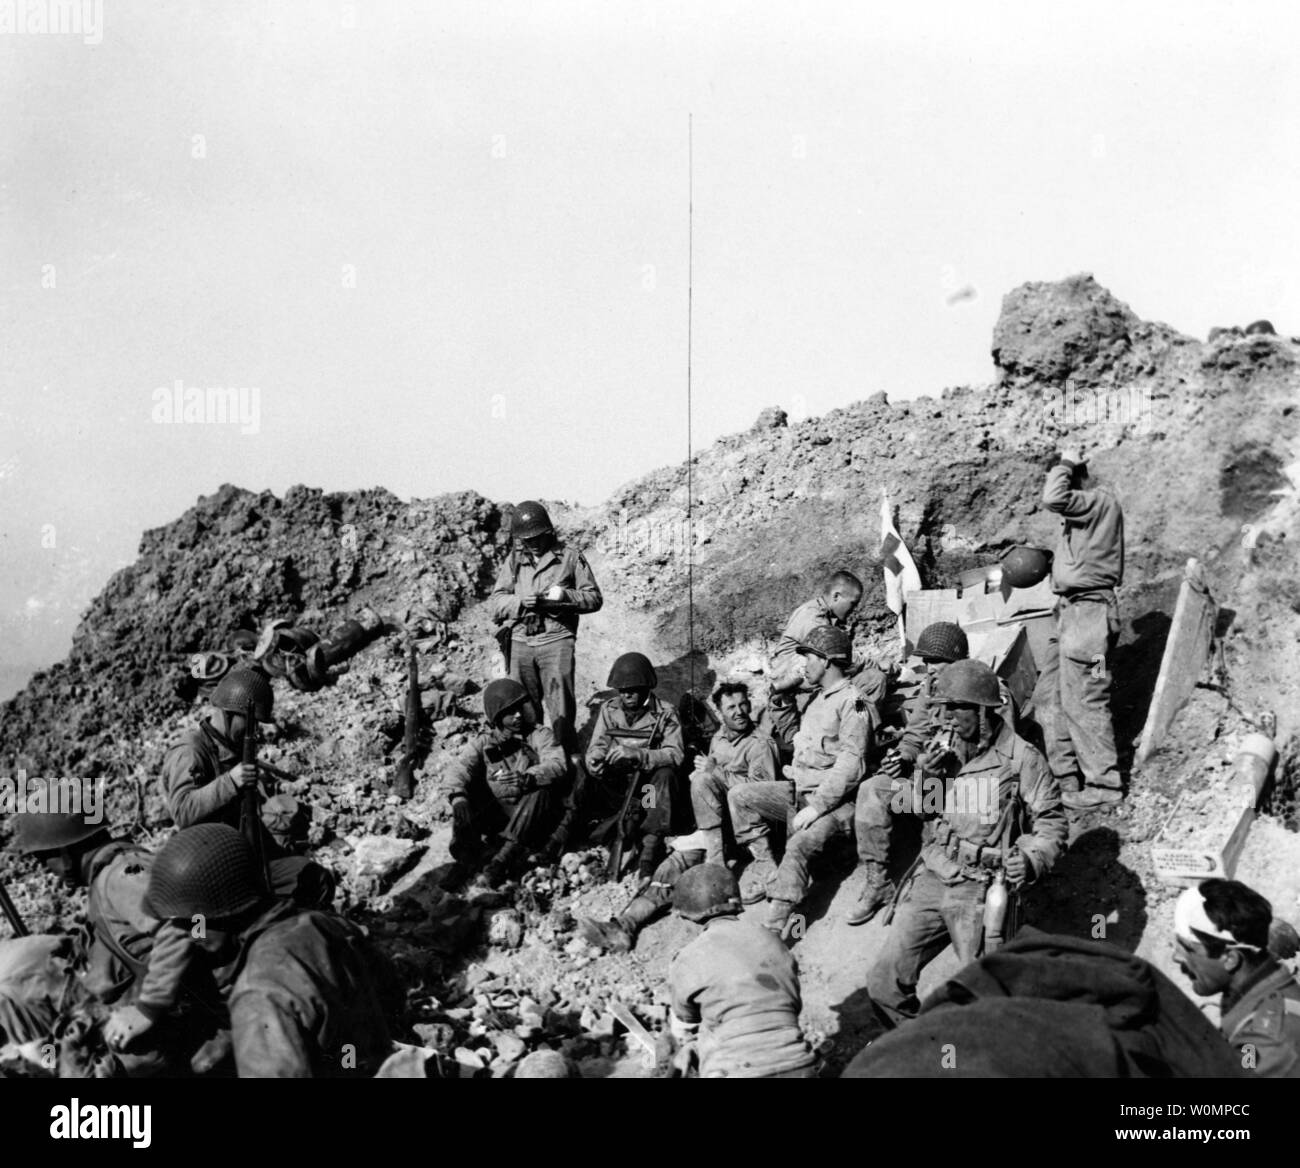 Stati Uniti Army Ranger resto sulla cima delle scogliere a Pointe du Hoc, che essi irruppero nel sostegno della spiaggia di Omaha sbarco del D-Day, Giugno 6, 1944. Fotografia è stata rilasciata per la pubblicazione il 12 giugno 1944. Foto di U.S. Navy/Archivi Nazionali/UPI Foto Stock